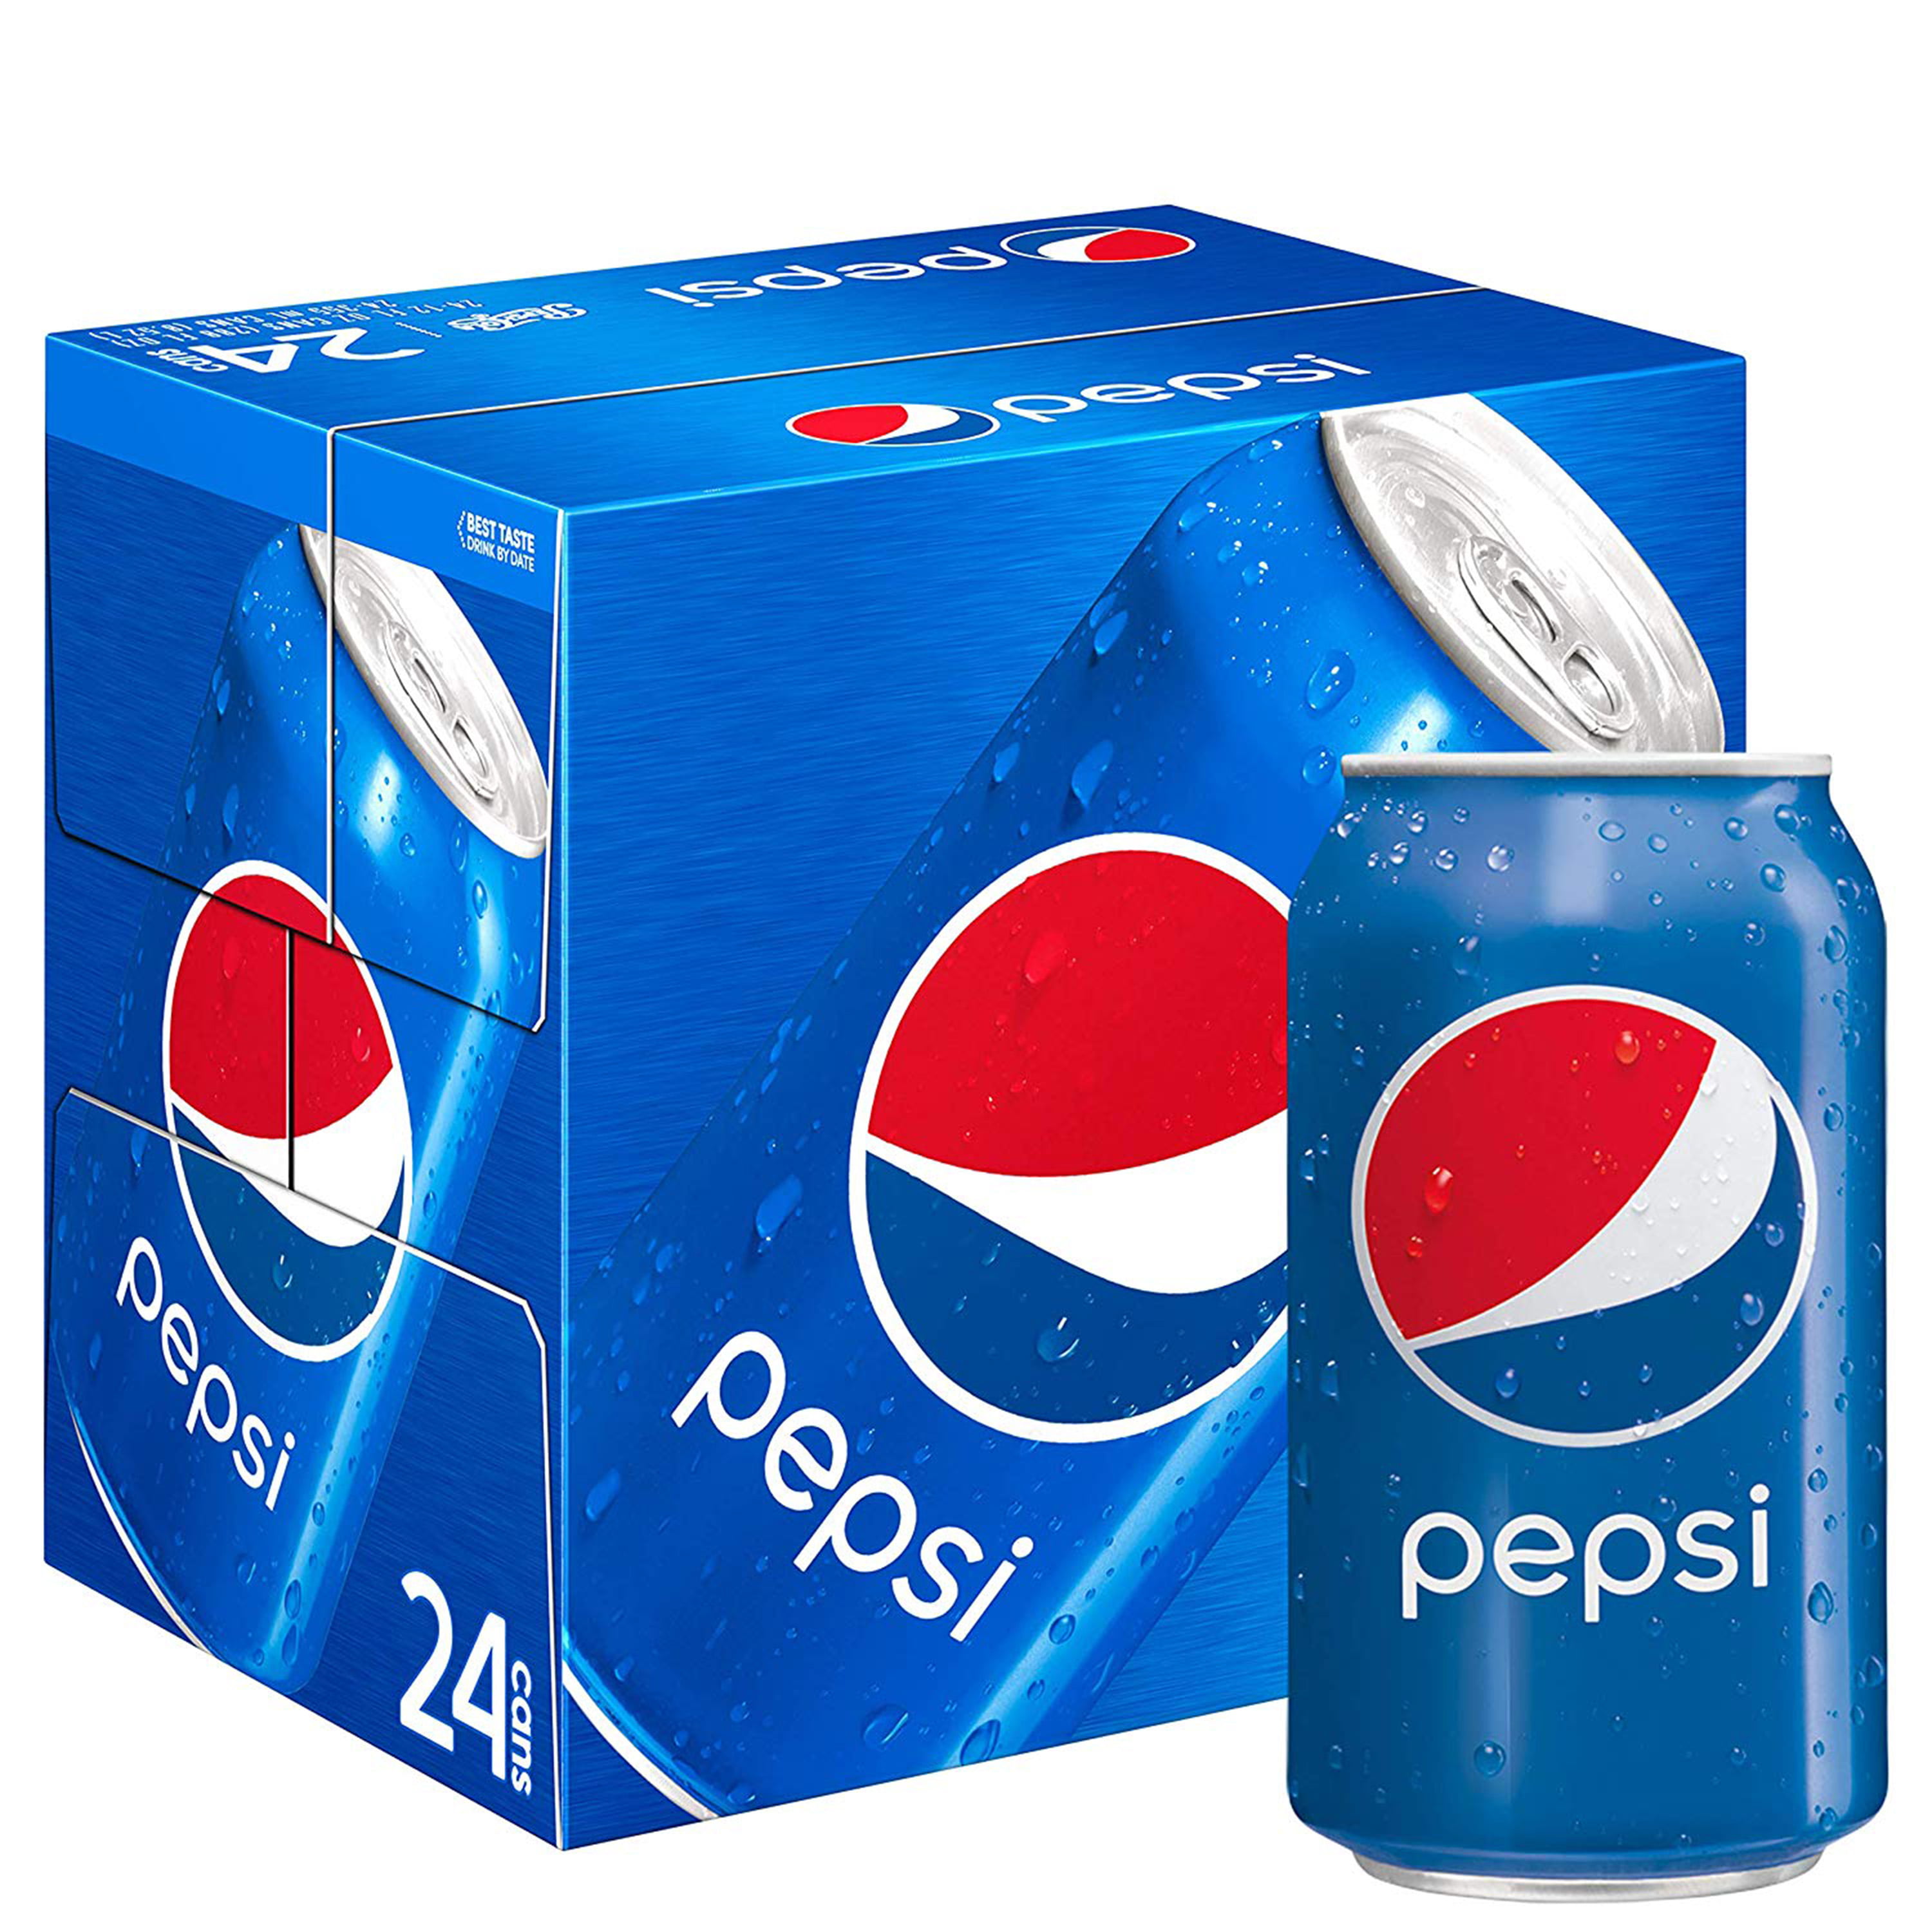 Lista 94+ Foto Lista De Precios De Pepsi 2020 México Mirada Tensa